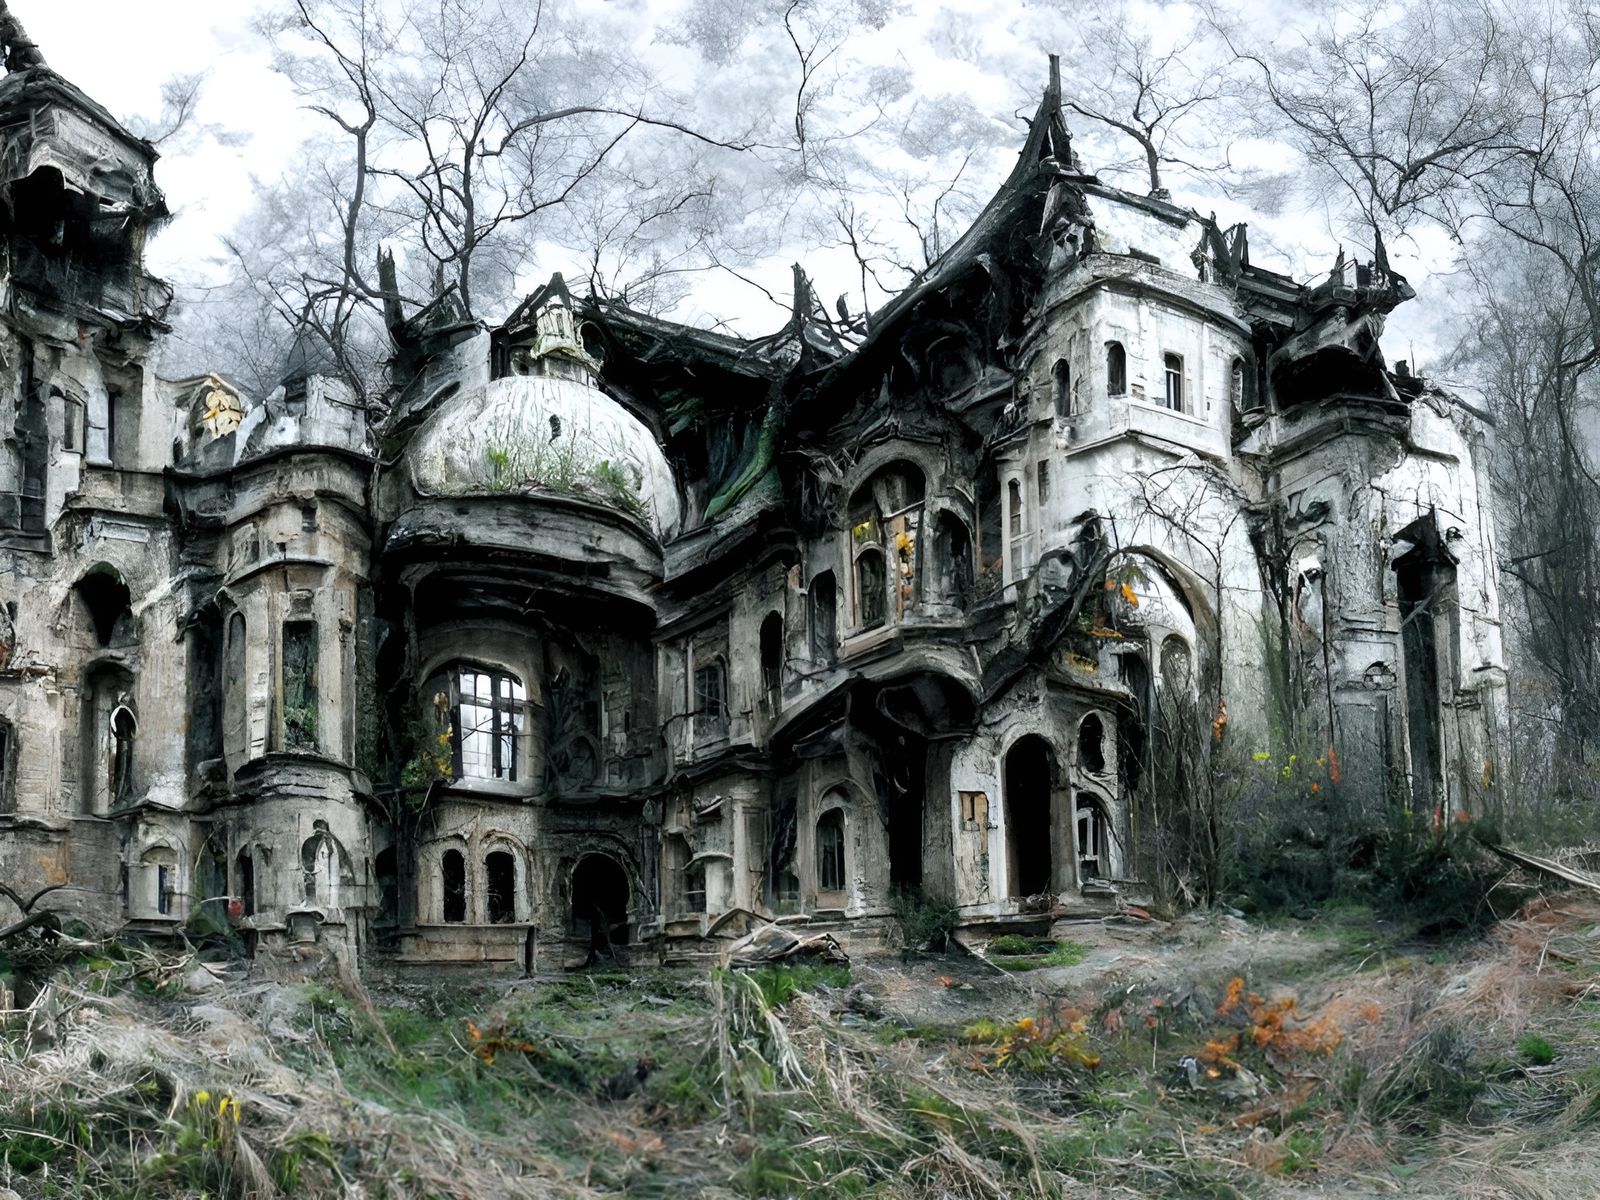 Abandoned Palace somewhere in Poland